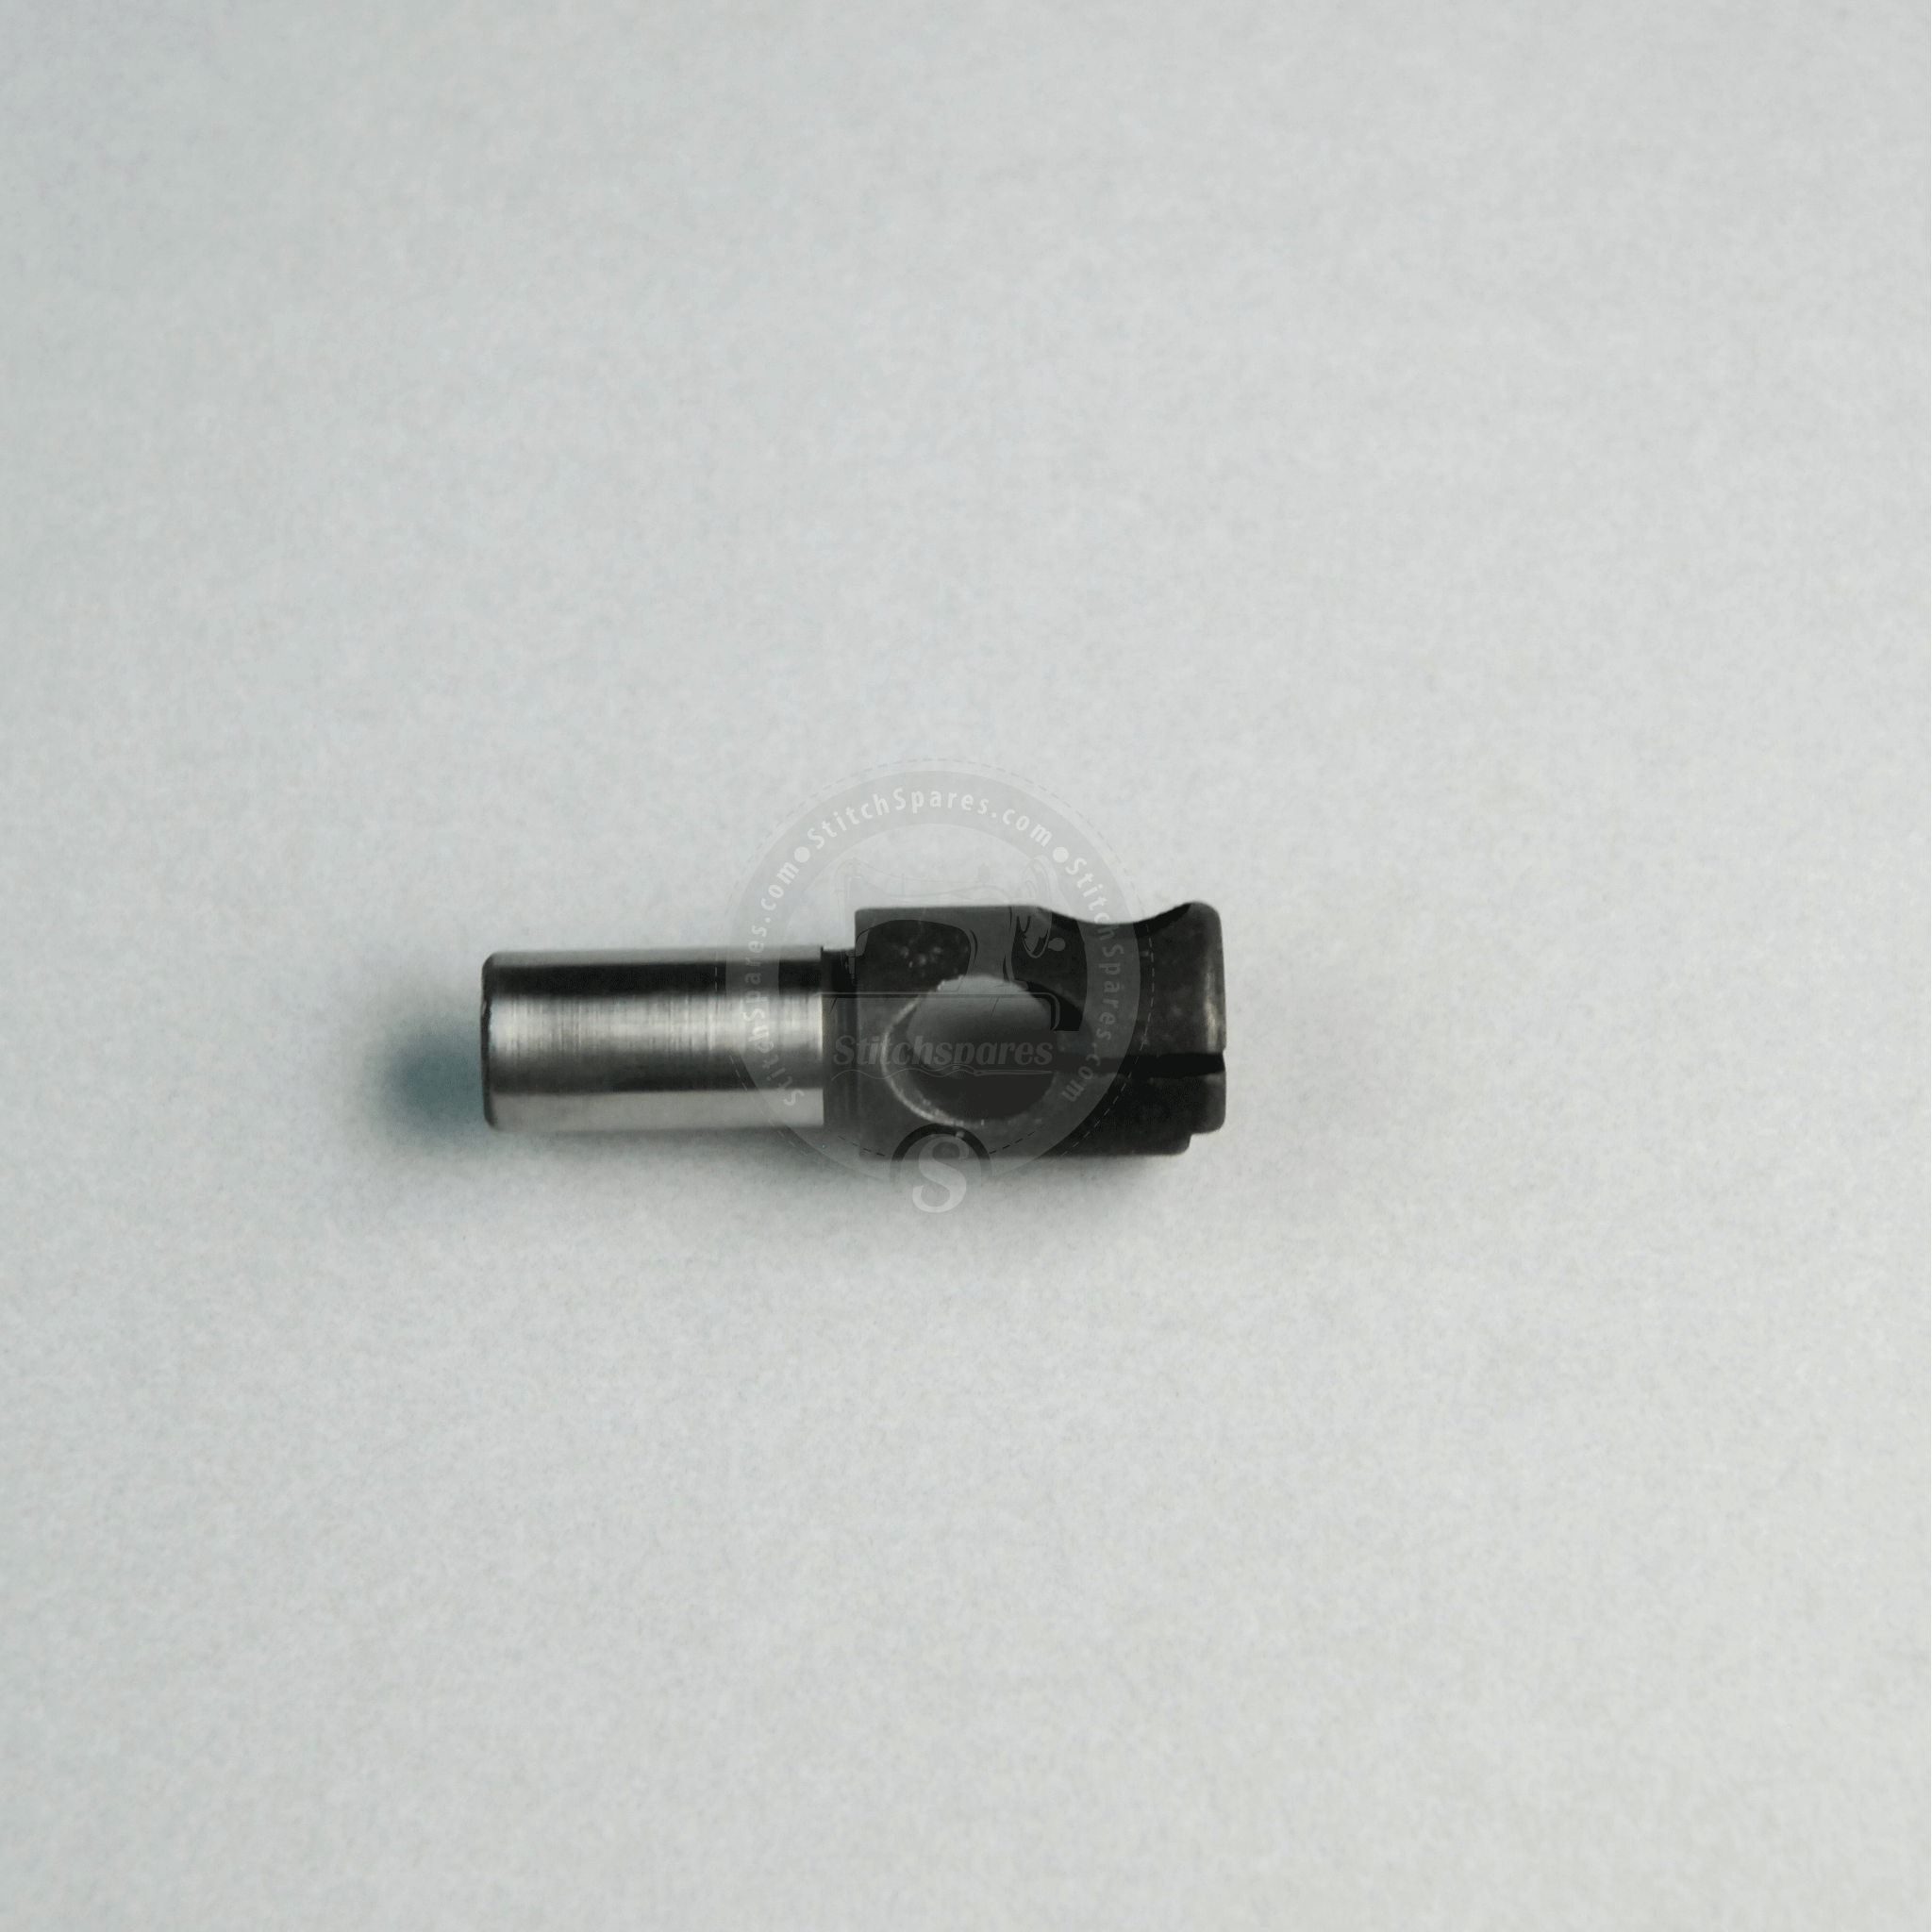 B1402-761-0A0 Nadelstangenanschluss Juki-Knopflochmaschine